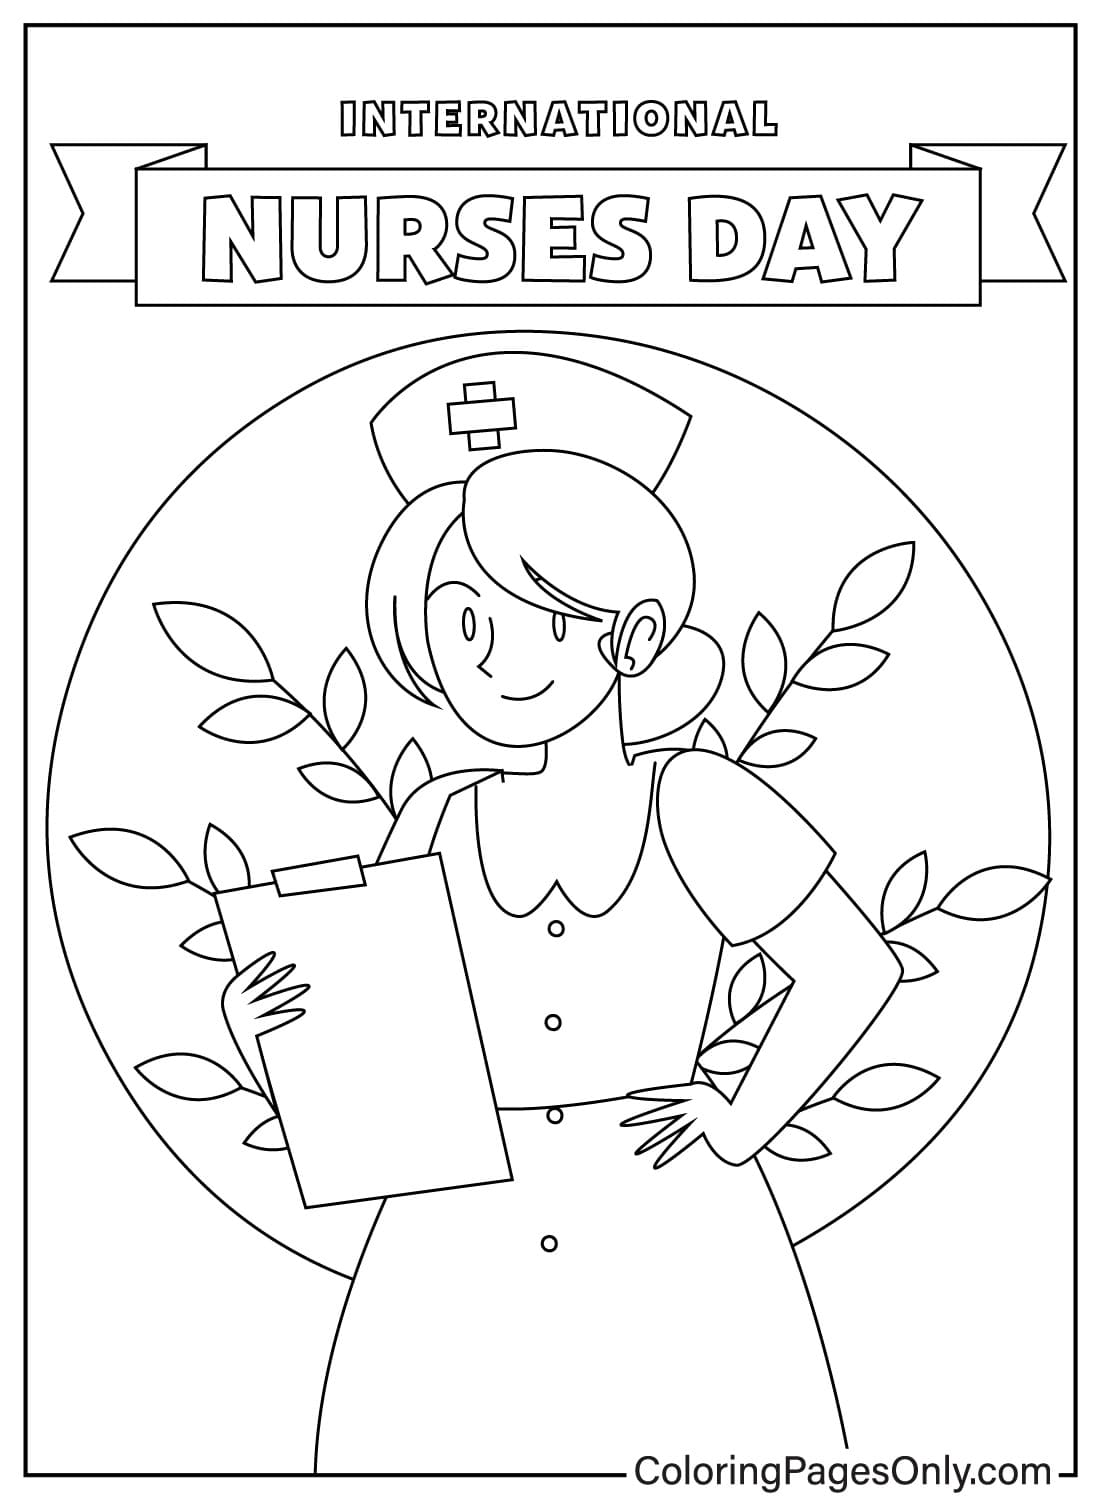 Página para colorear de enfermeras nacionales de Nurse